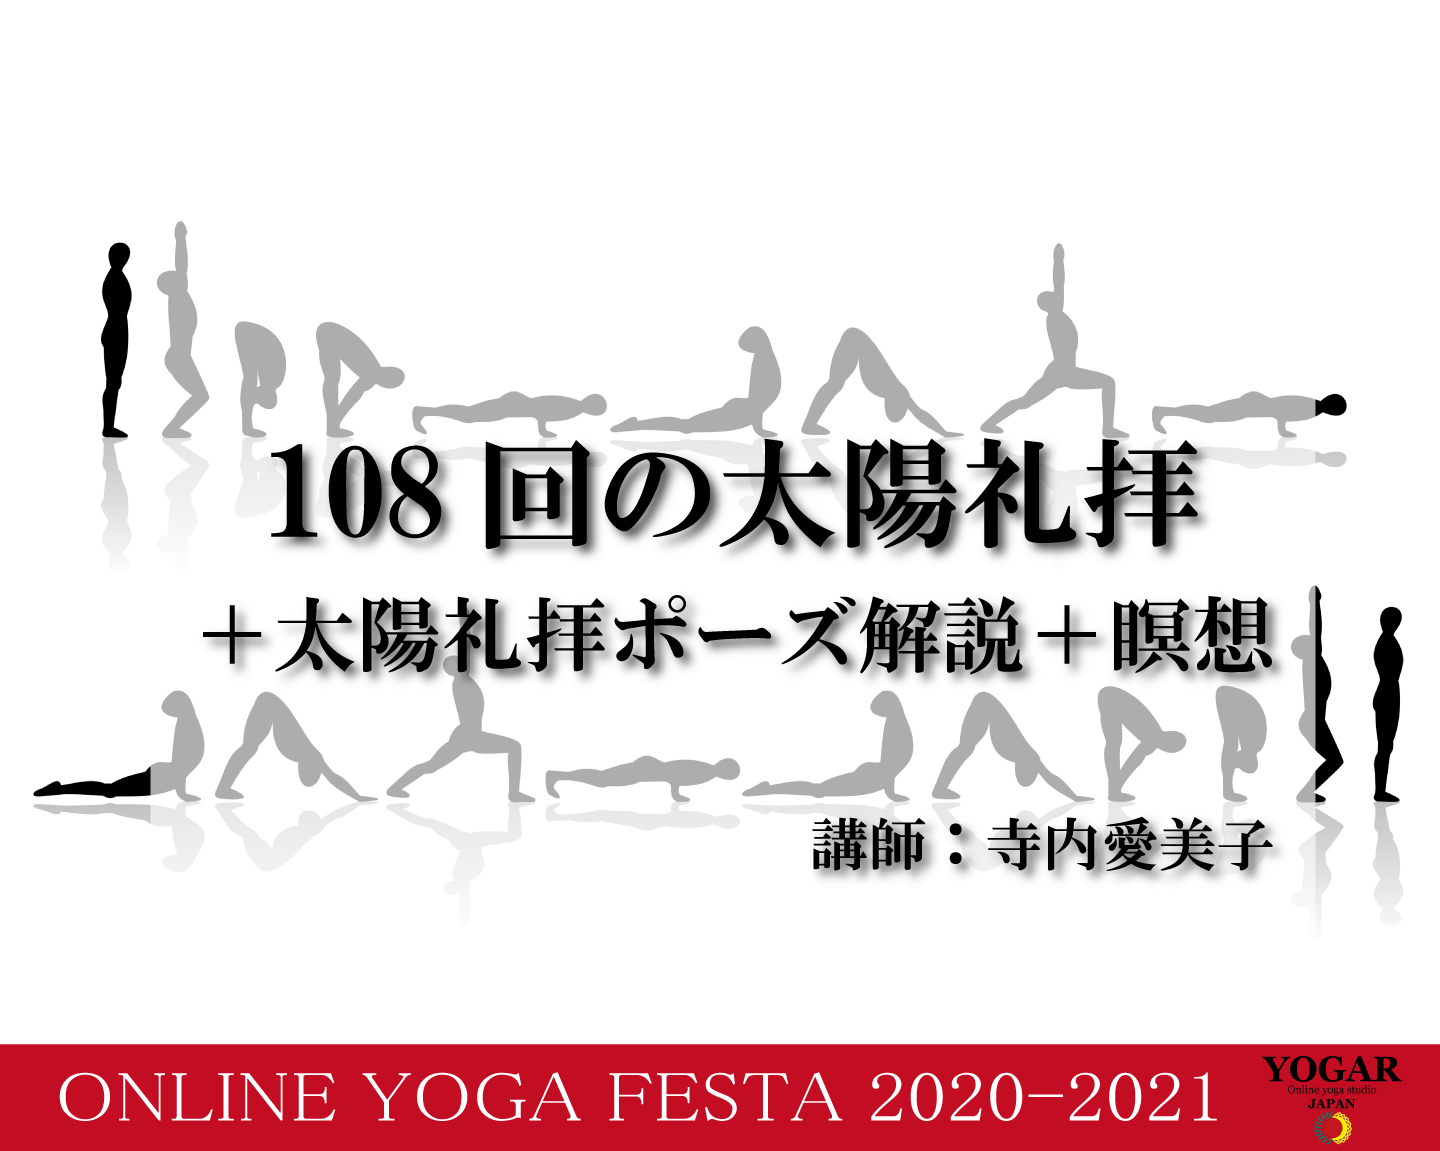 １０８回の太陽礼拝 太陽礼拝ポーズ解説 瞑想 Yogar Japan Online